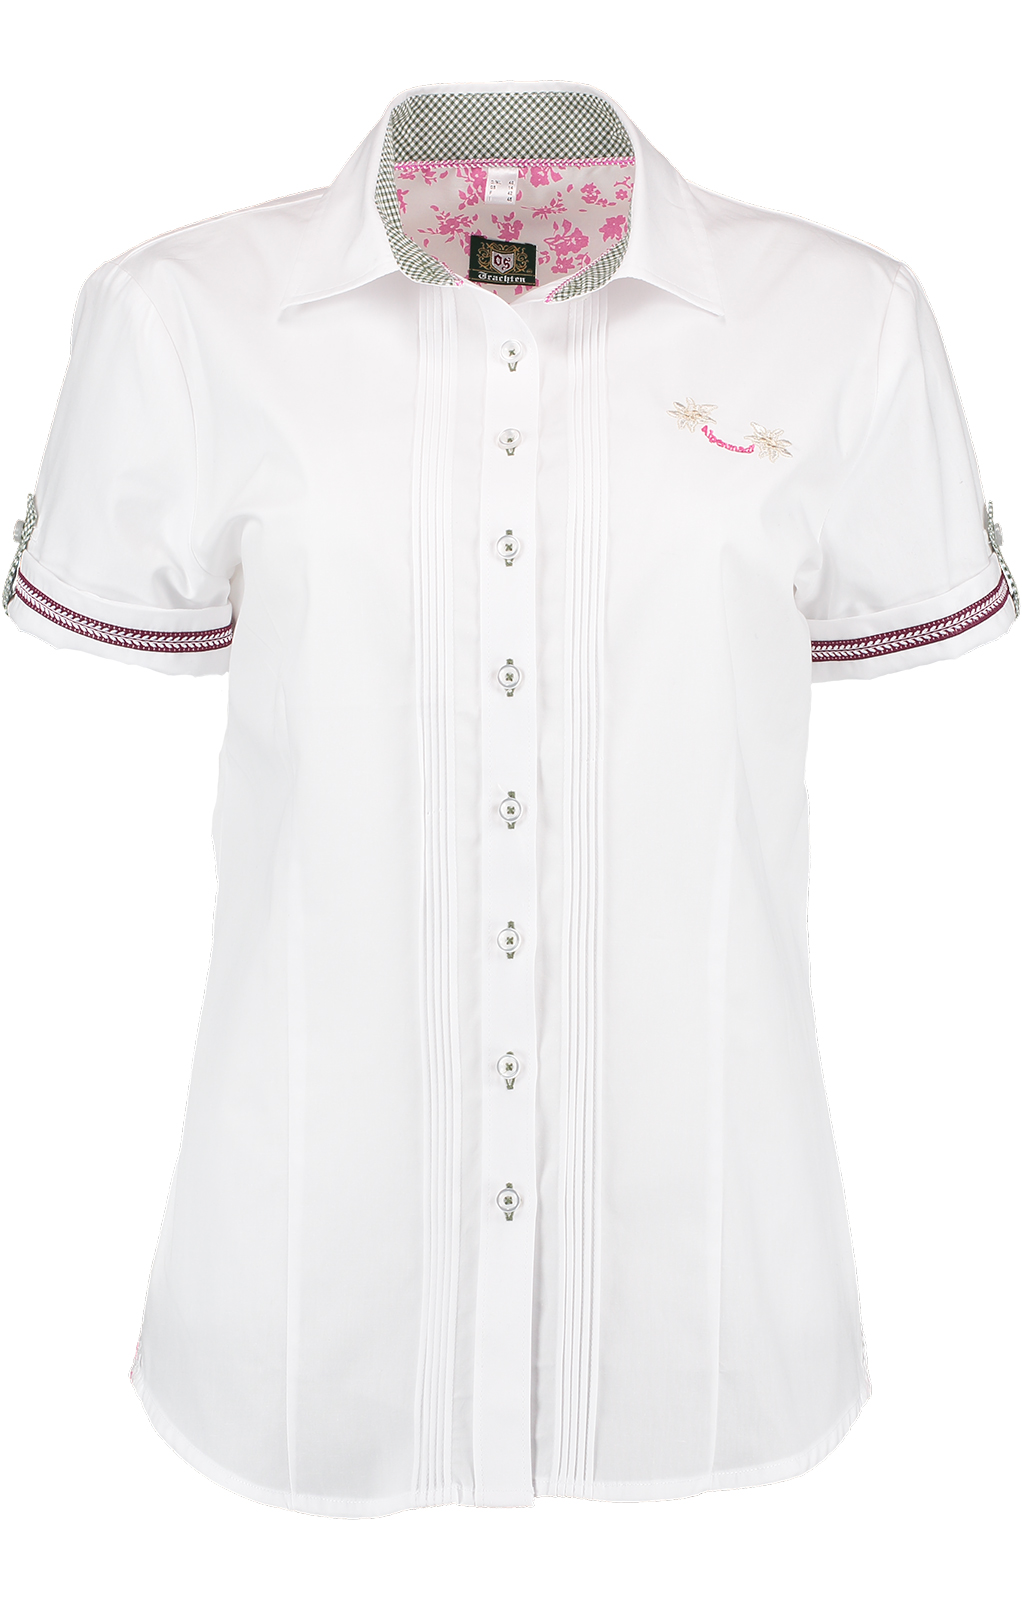 weitere Bilder von Traditional blouse SIEBENSTERN white pink